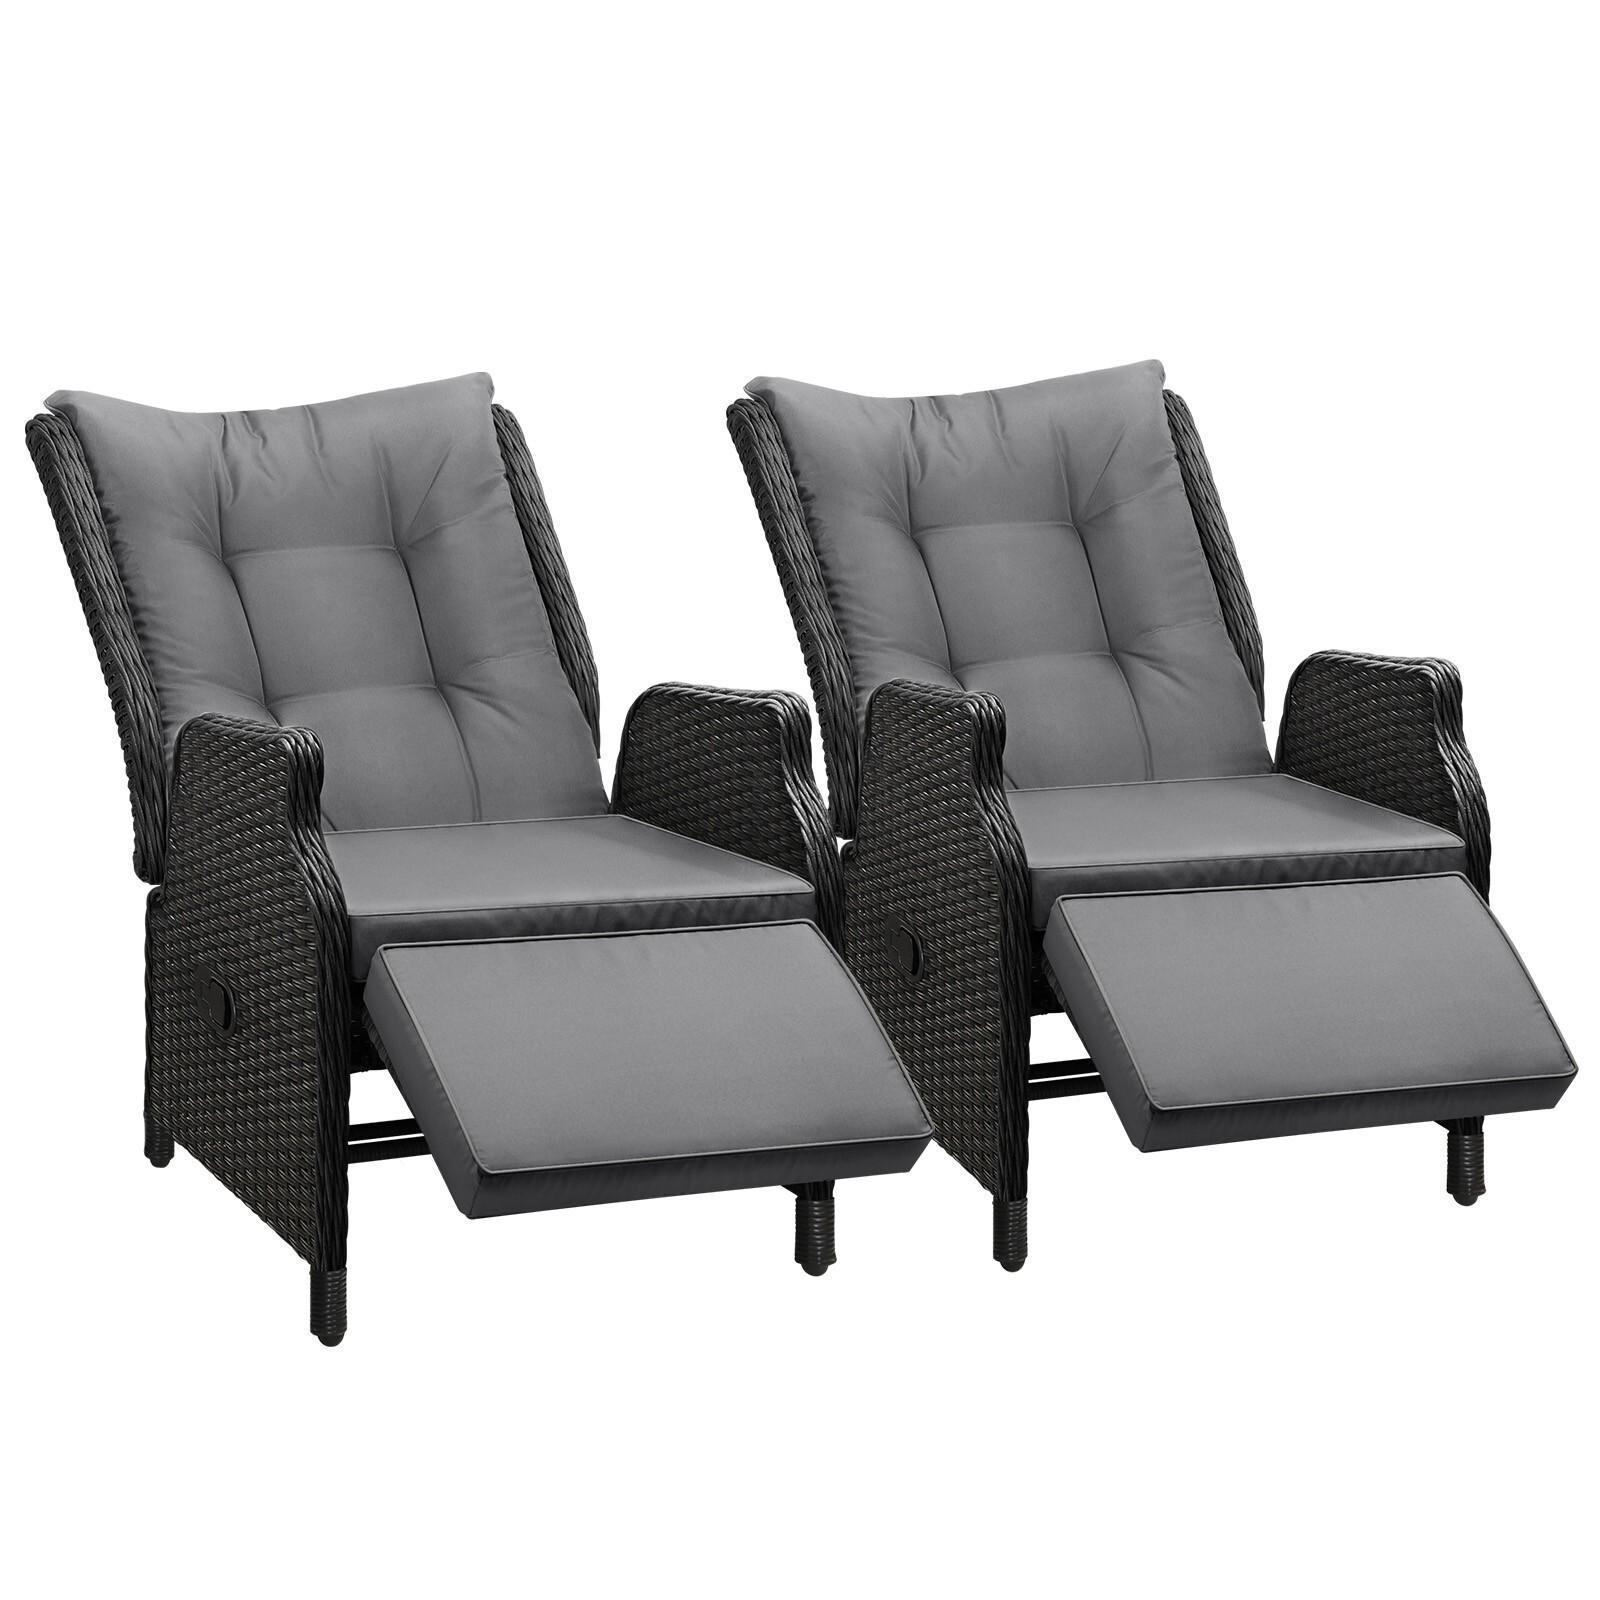 Livsip Recliner Chairs Sun lounger Set of 2